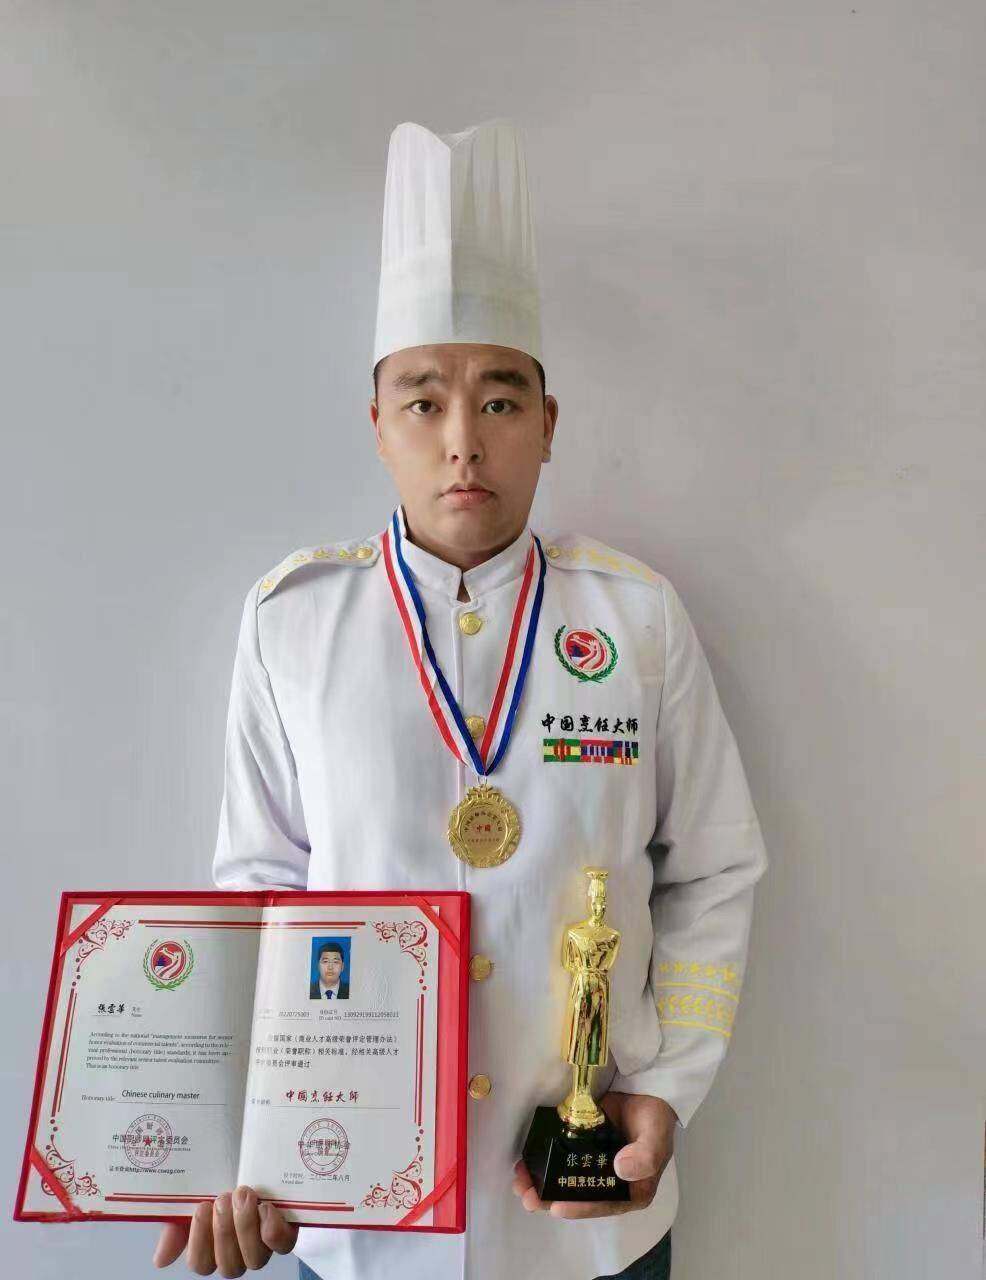 2019年5月15日获得全国烹饪高级营养师证书